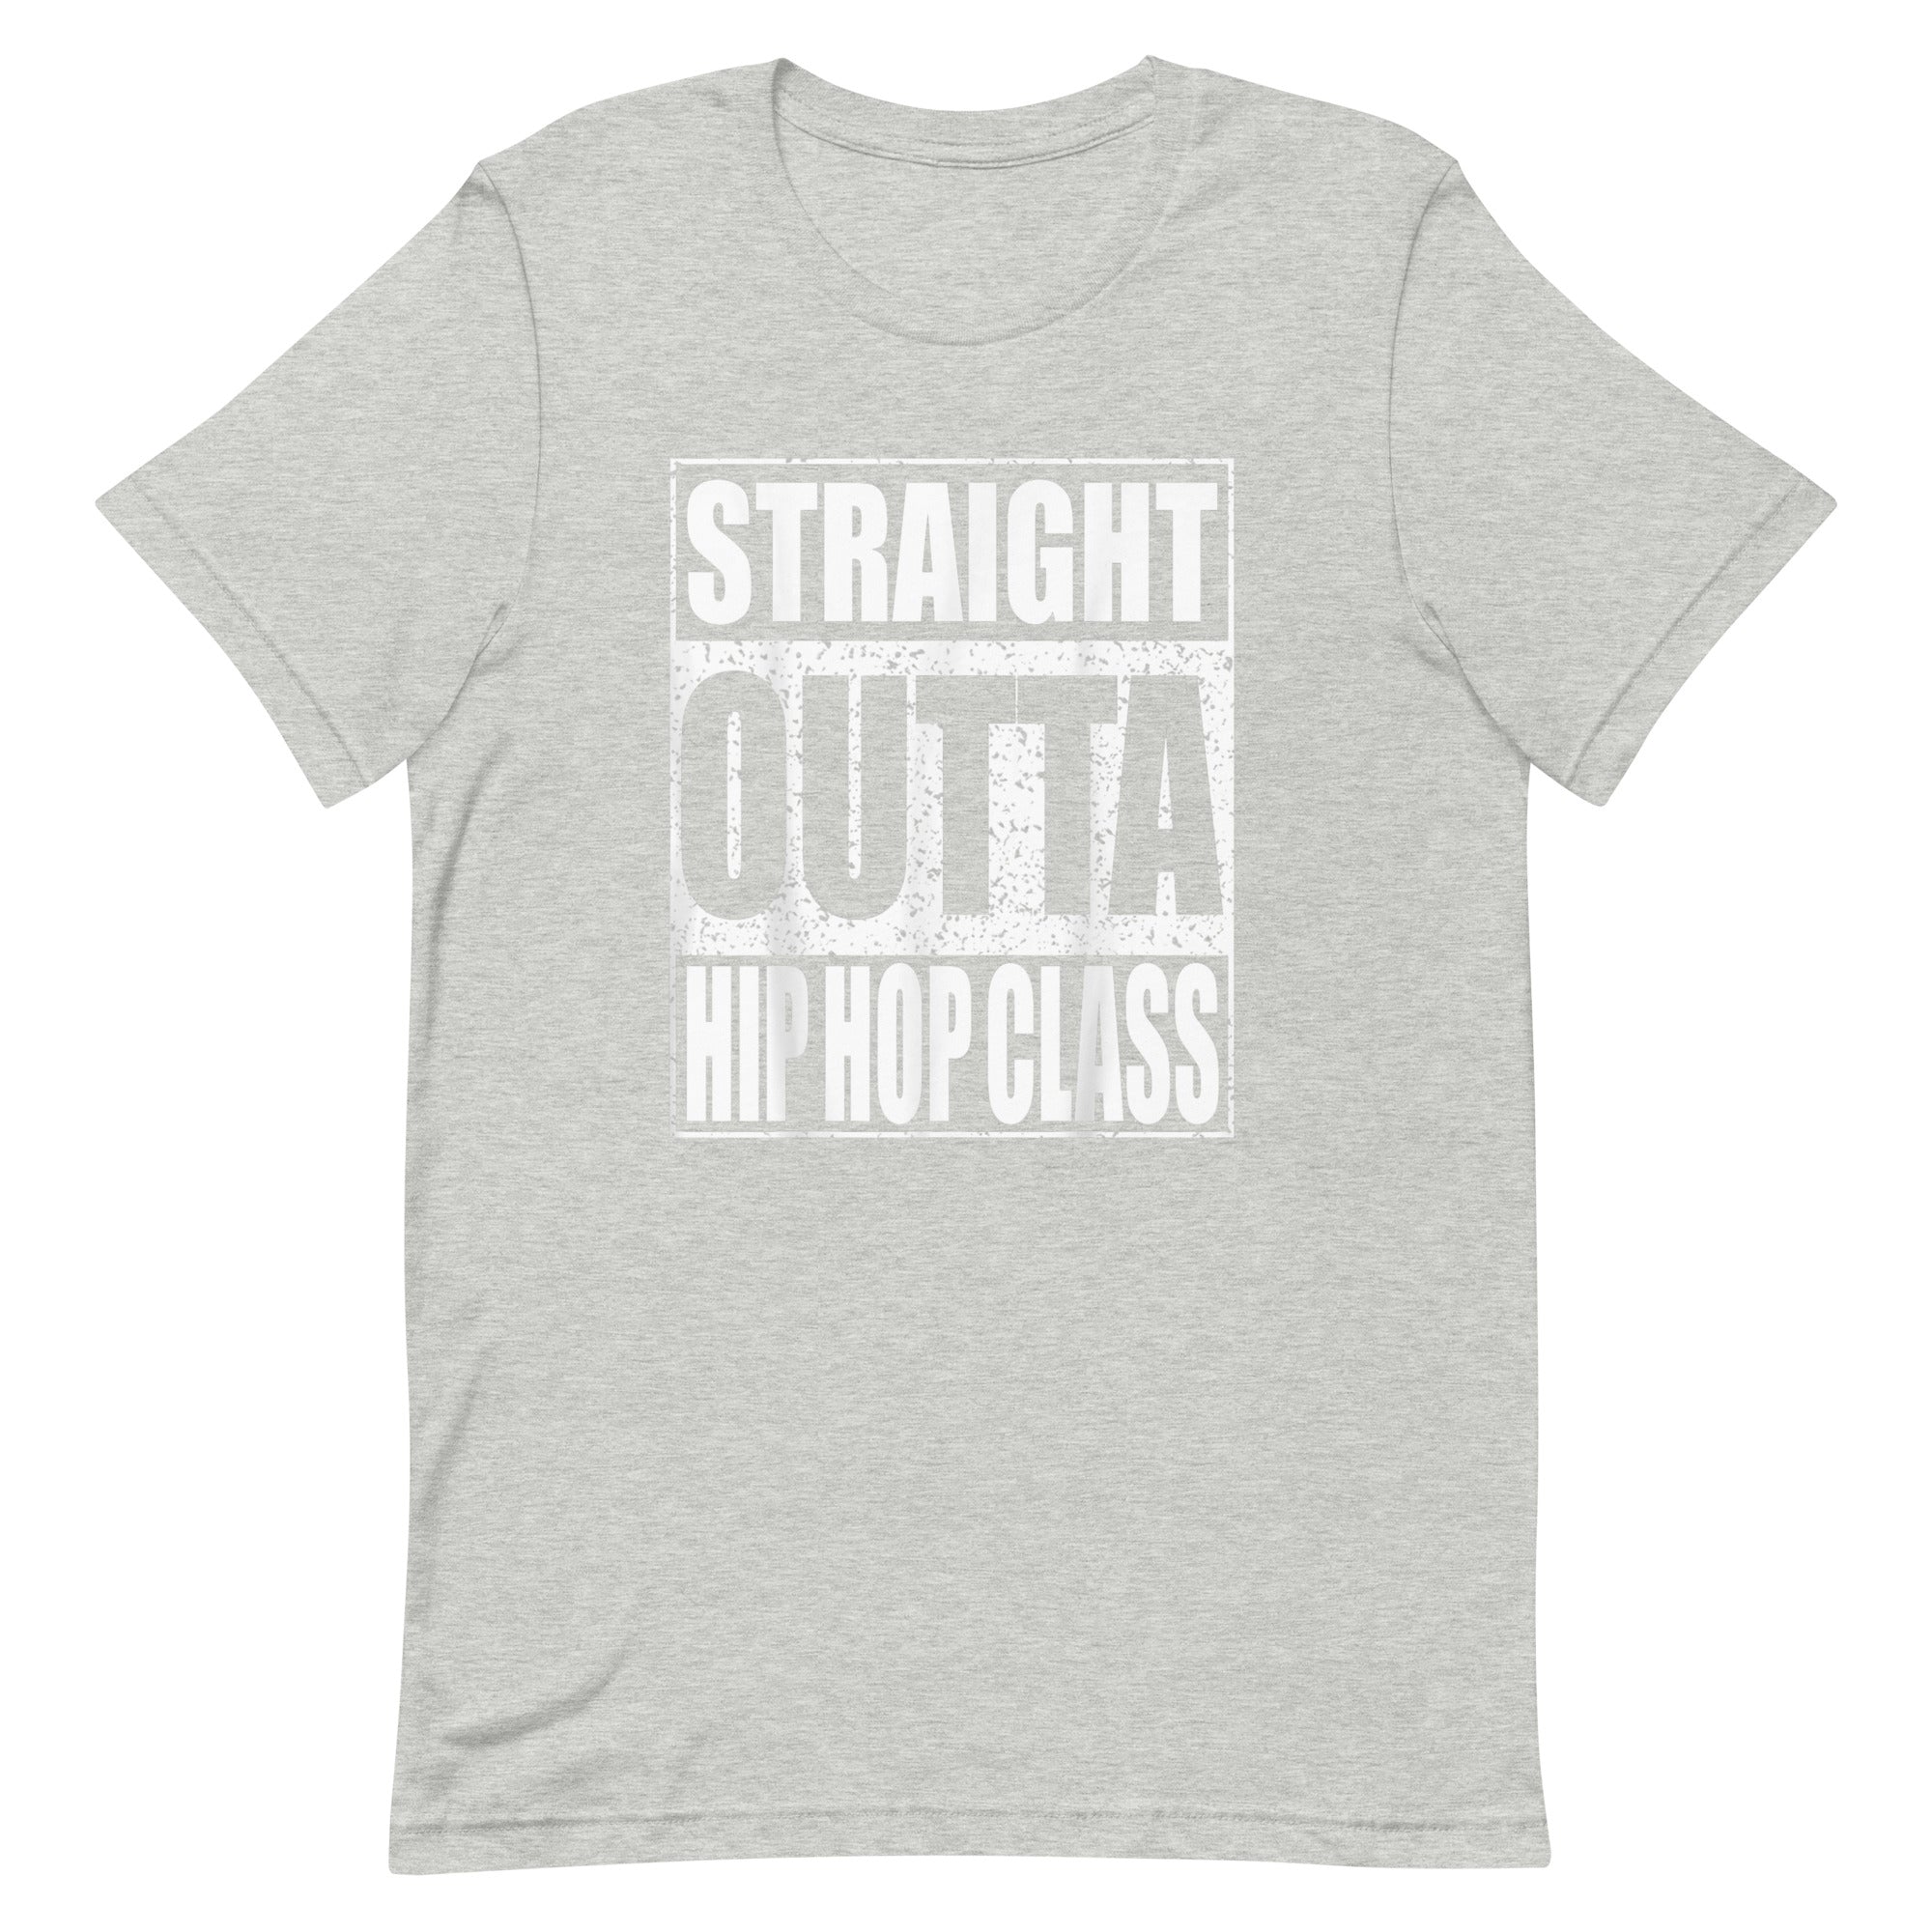 STRAIGHT OUTTA HIP HOP CLASS Unisex t-shirt - Hiphopya